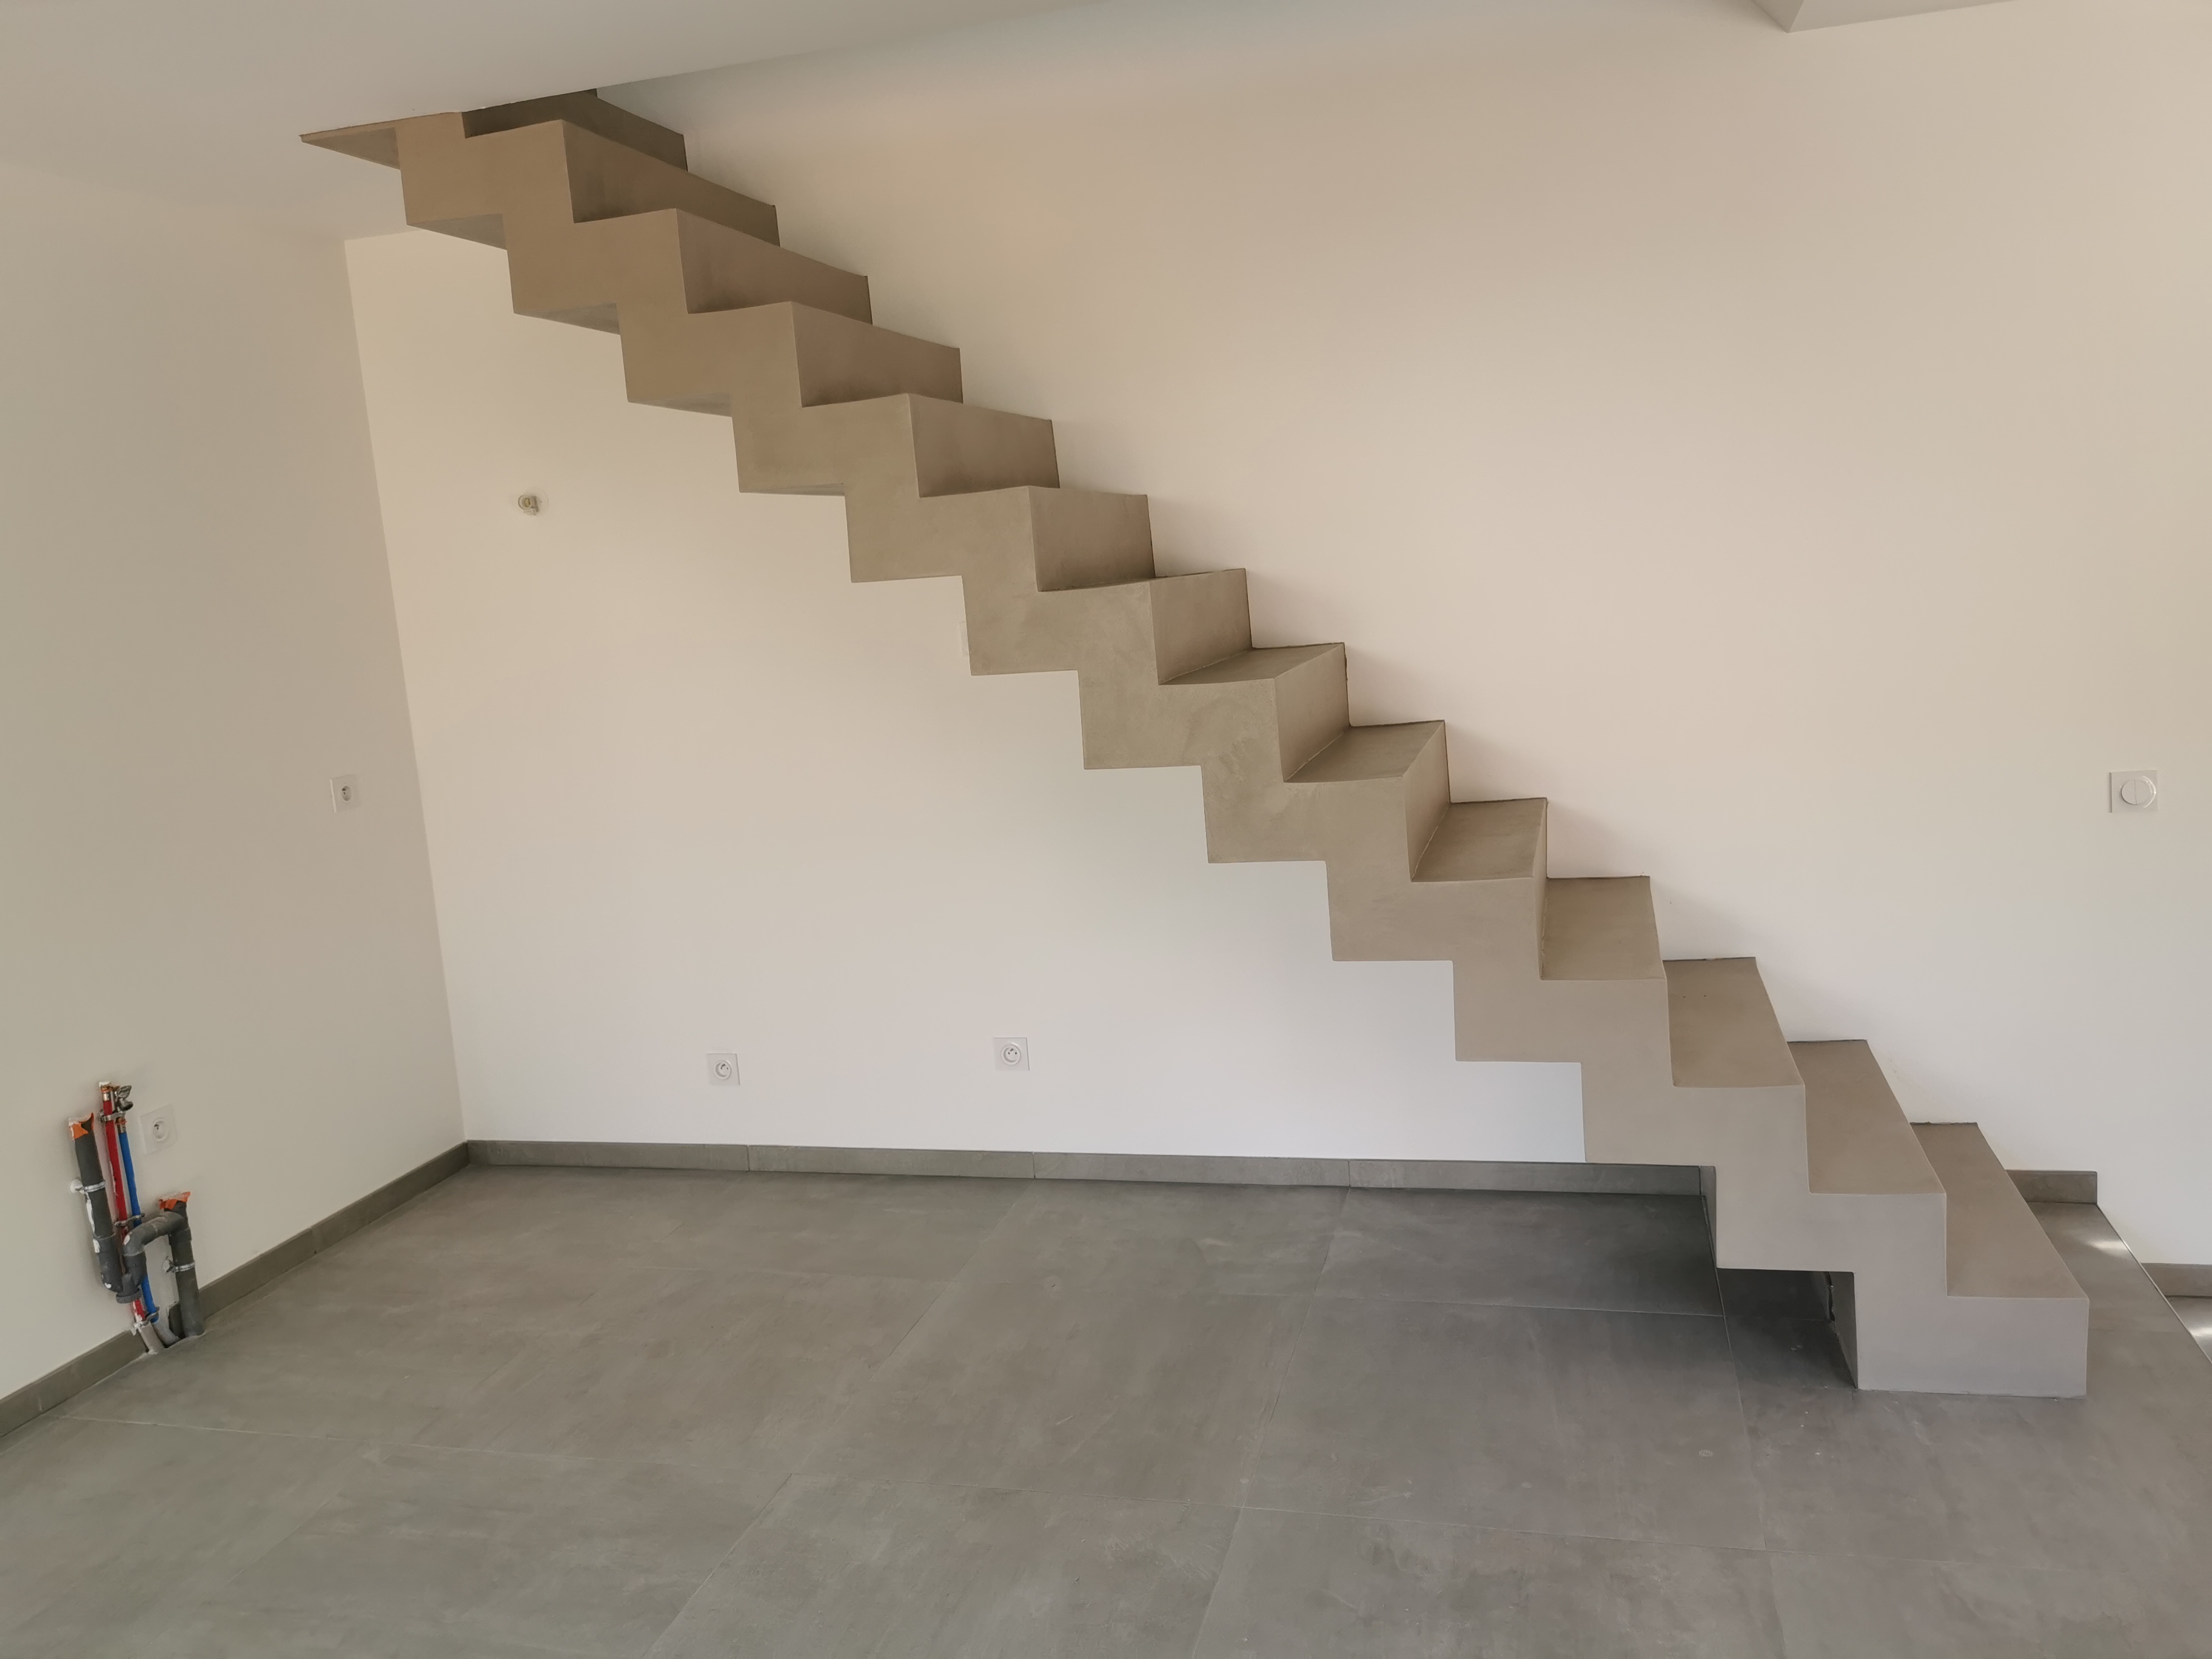 sublime escalier crémaillère dans une pièce à vivre en béton ciré vernis mat couleur galet original À arcachon proche Bordeaux pour un architecte